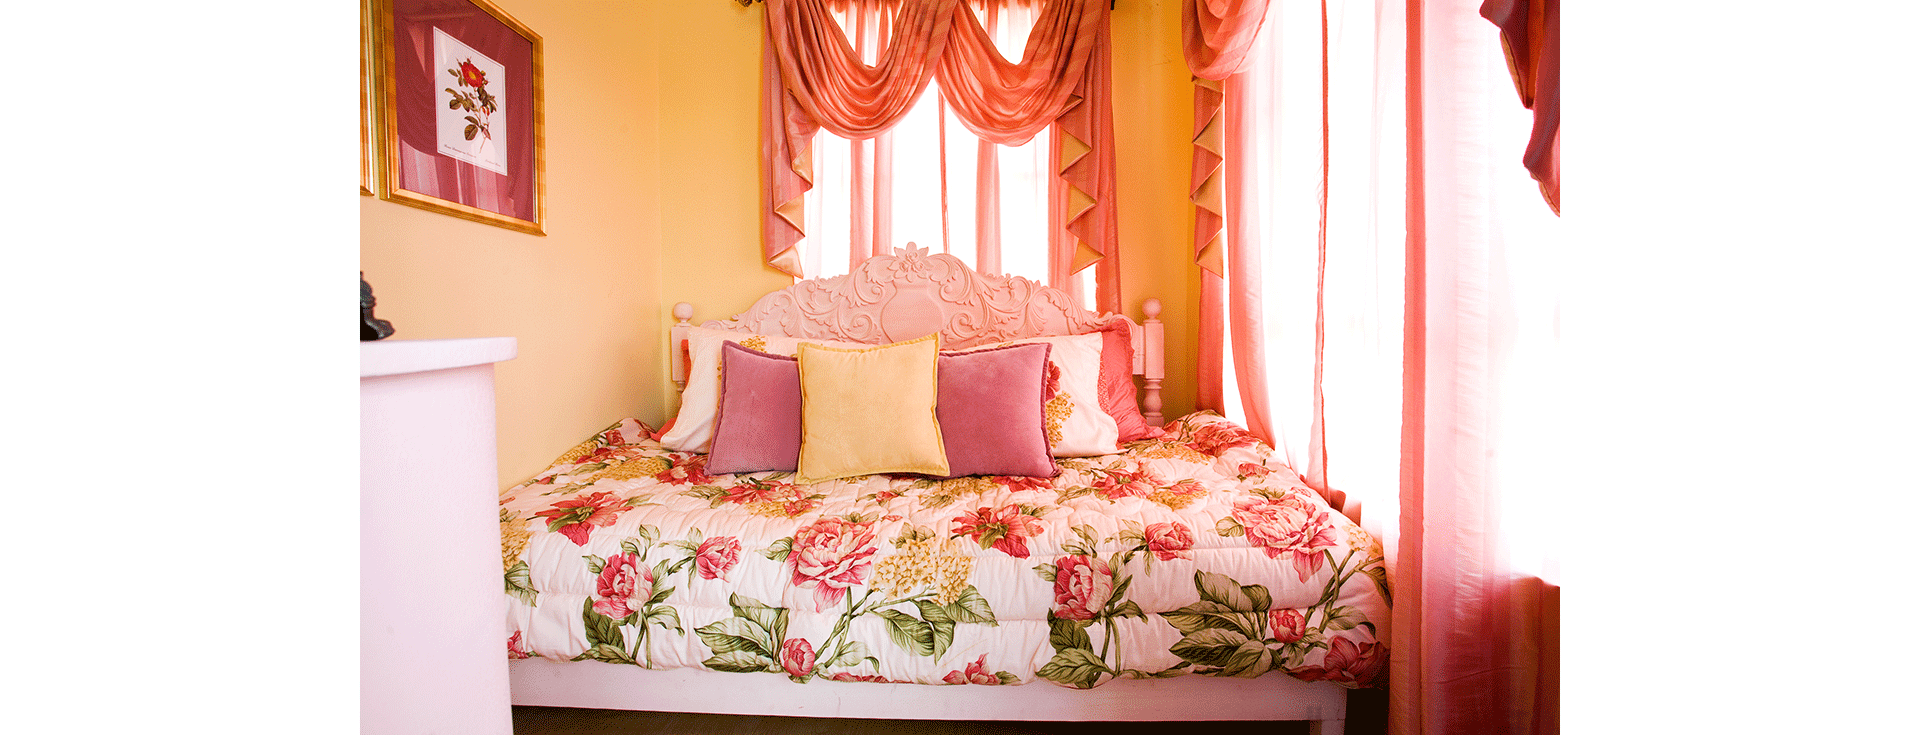 LP_Queen Elizabeth Bedroom 1